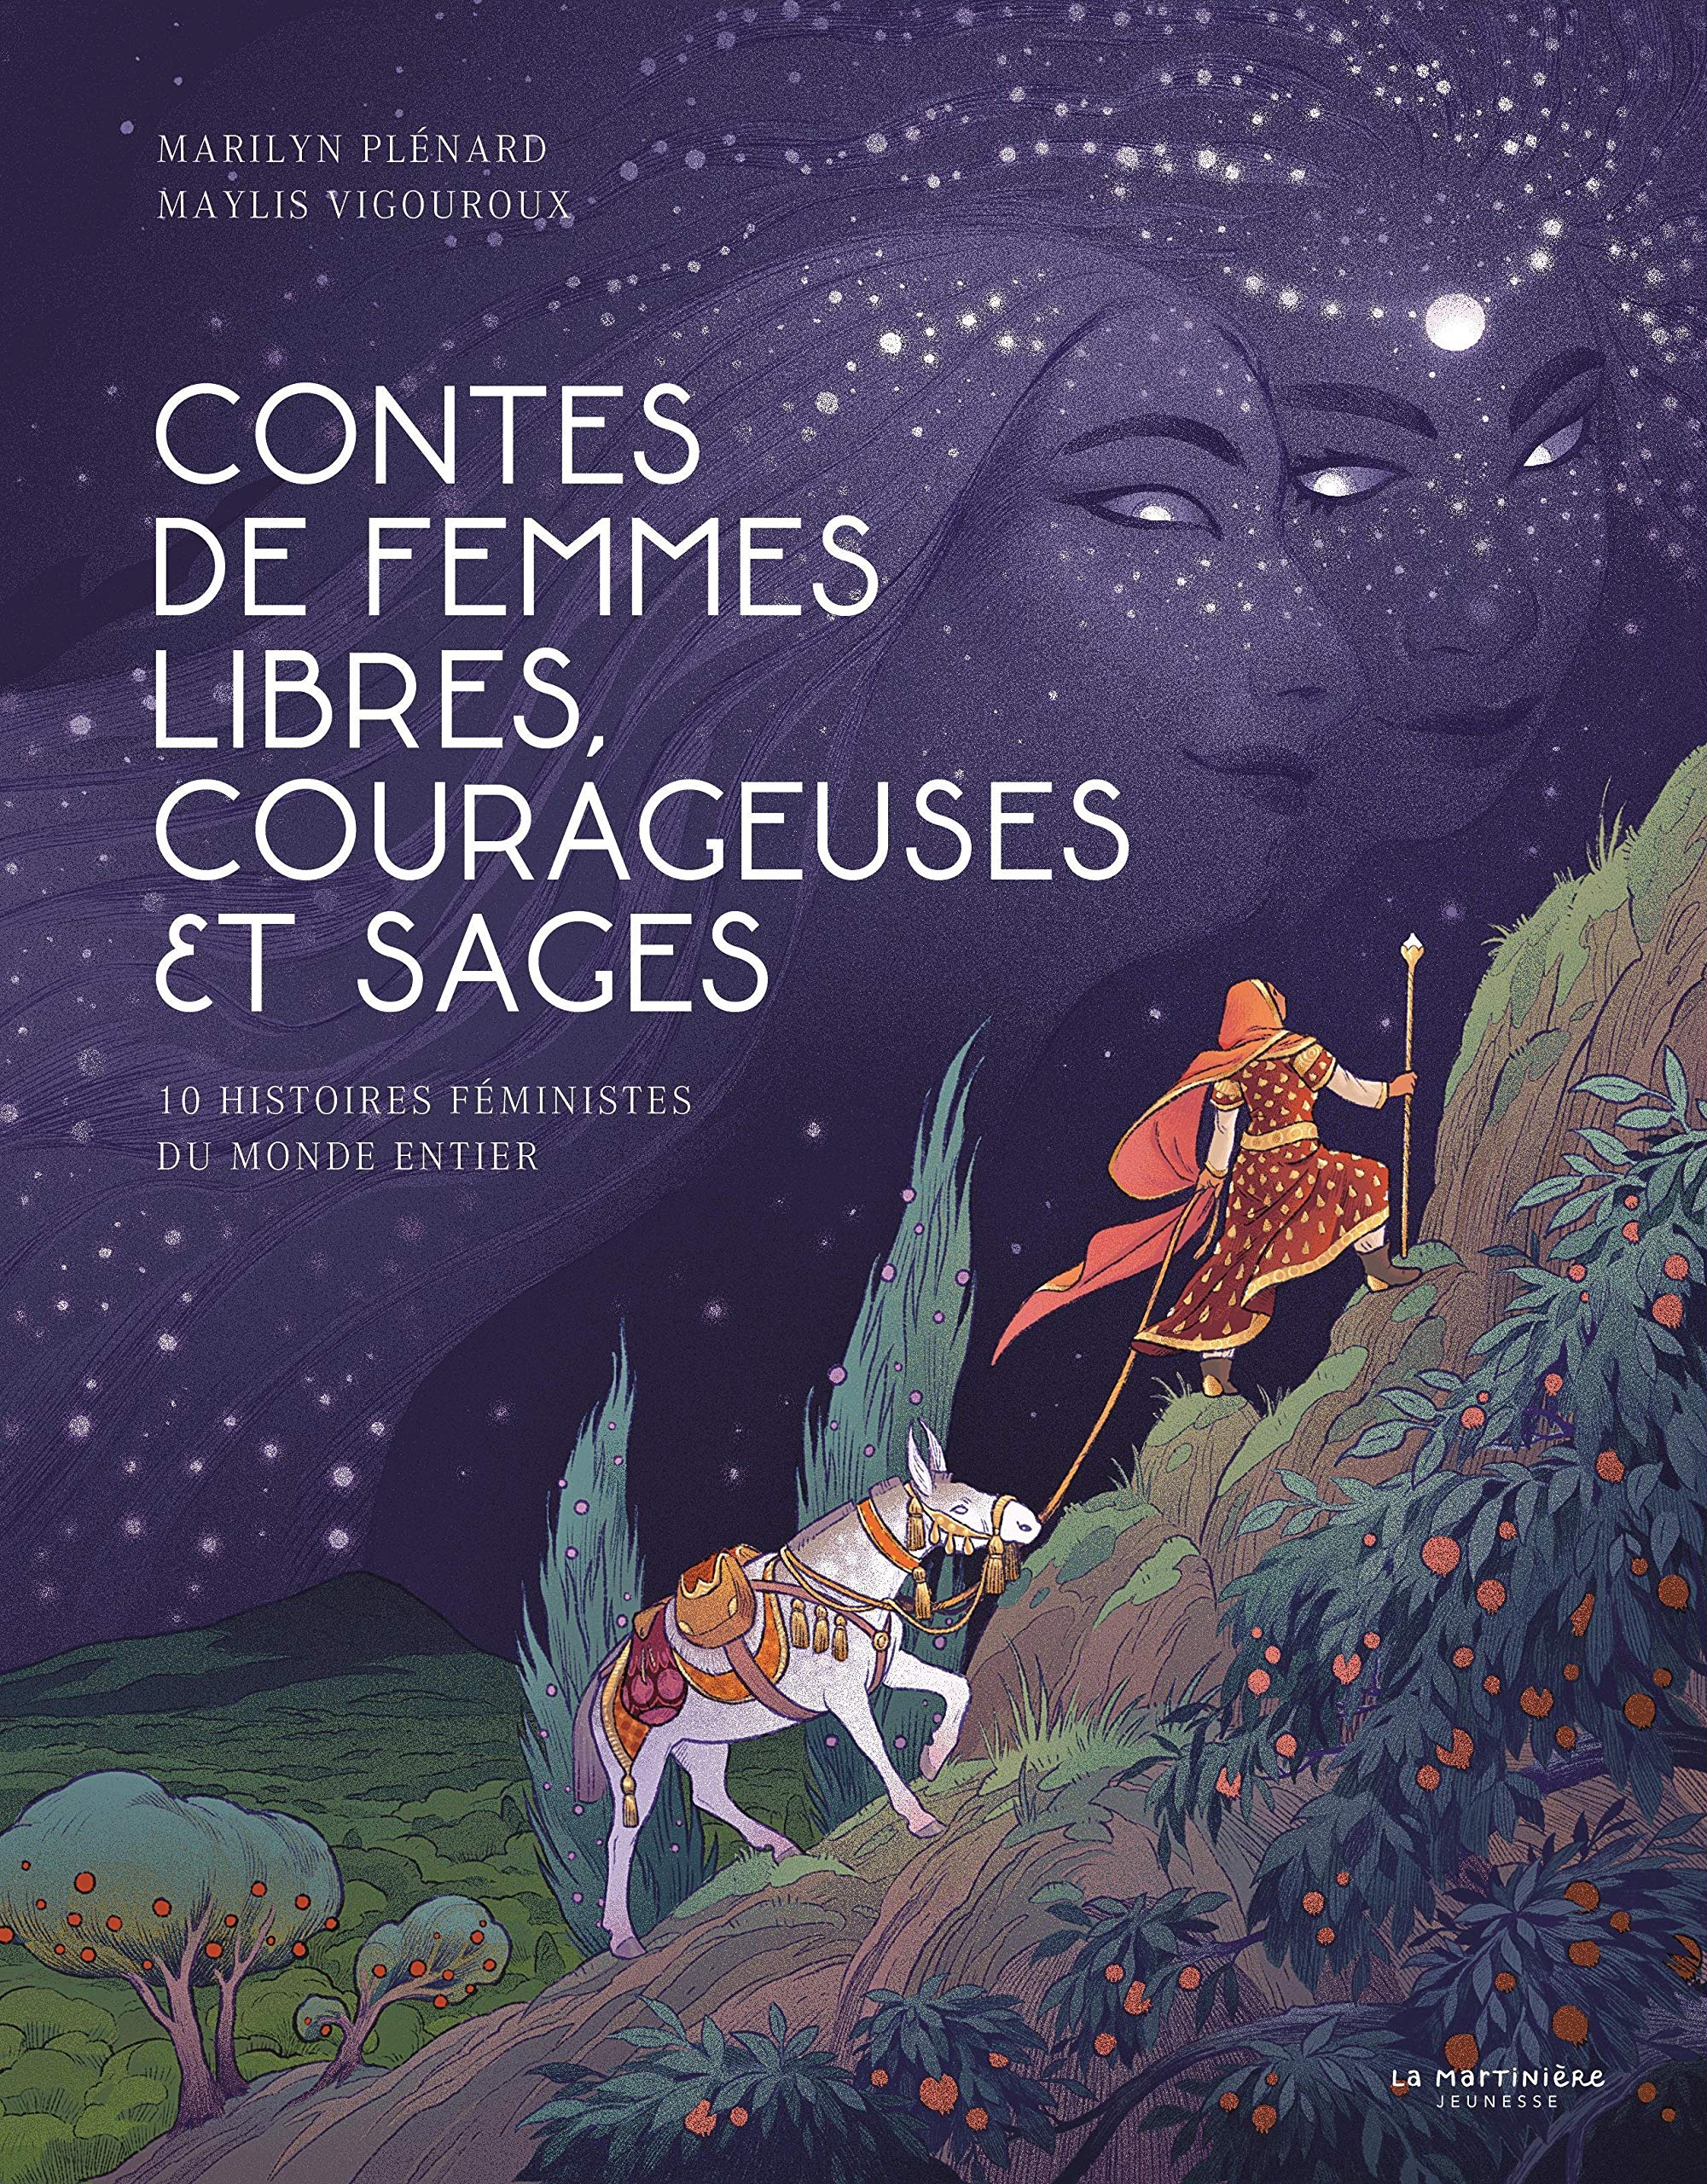 Framboise et Noisette: Merveilleuse histoire du soir, pleine d'aventure, de  courage et d'amour, livre enfant de 3 à 7 ans (French Edition)